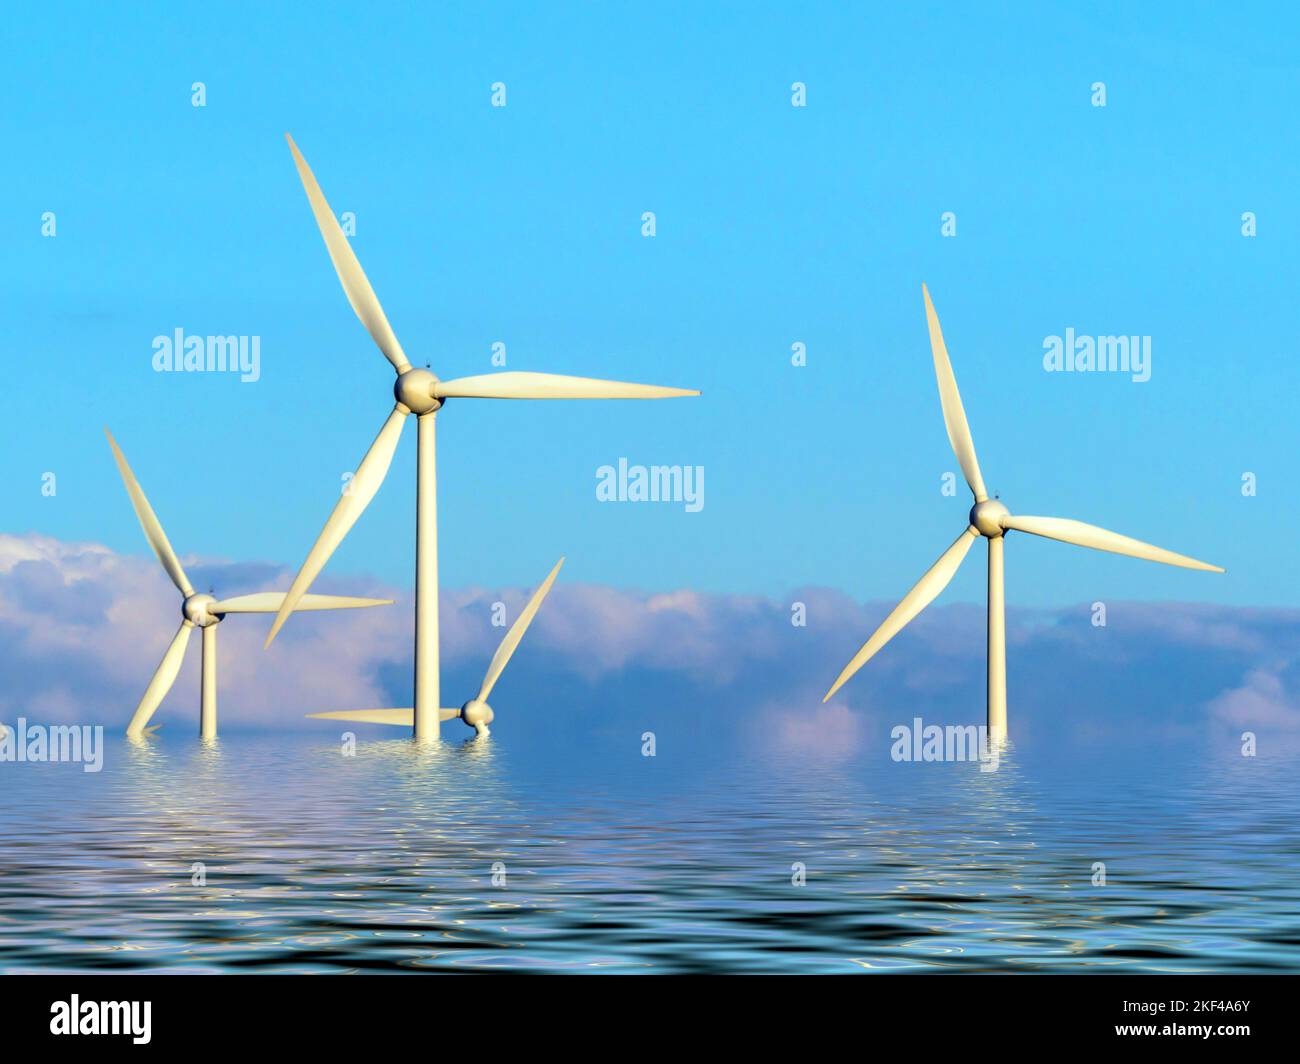 Symbolfoto für Öko-Aufschläge für alternativa Energiegewinnung, steigende Energiekosten, steigende Stromkosten, Windräder im Wasser, Foto de stock